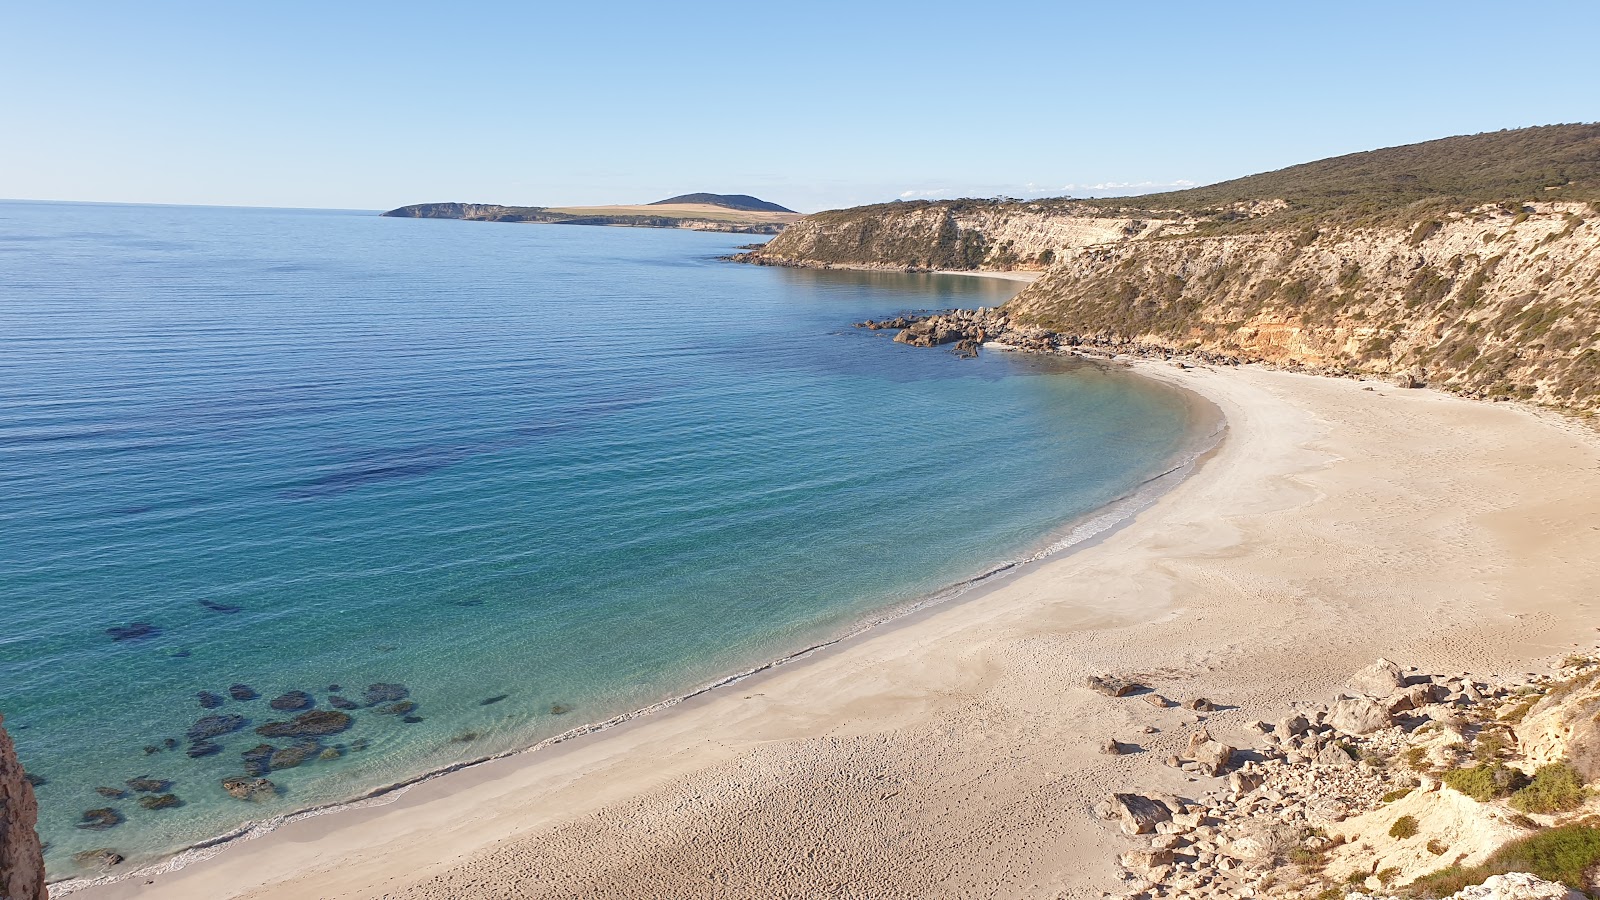 Gallipoli Beach'in fotoğrafı parlak kum yüzey ile